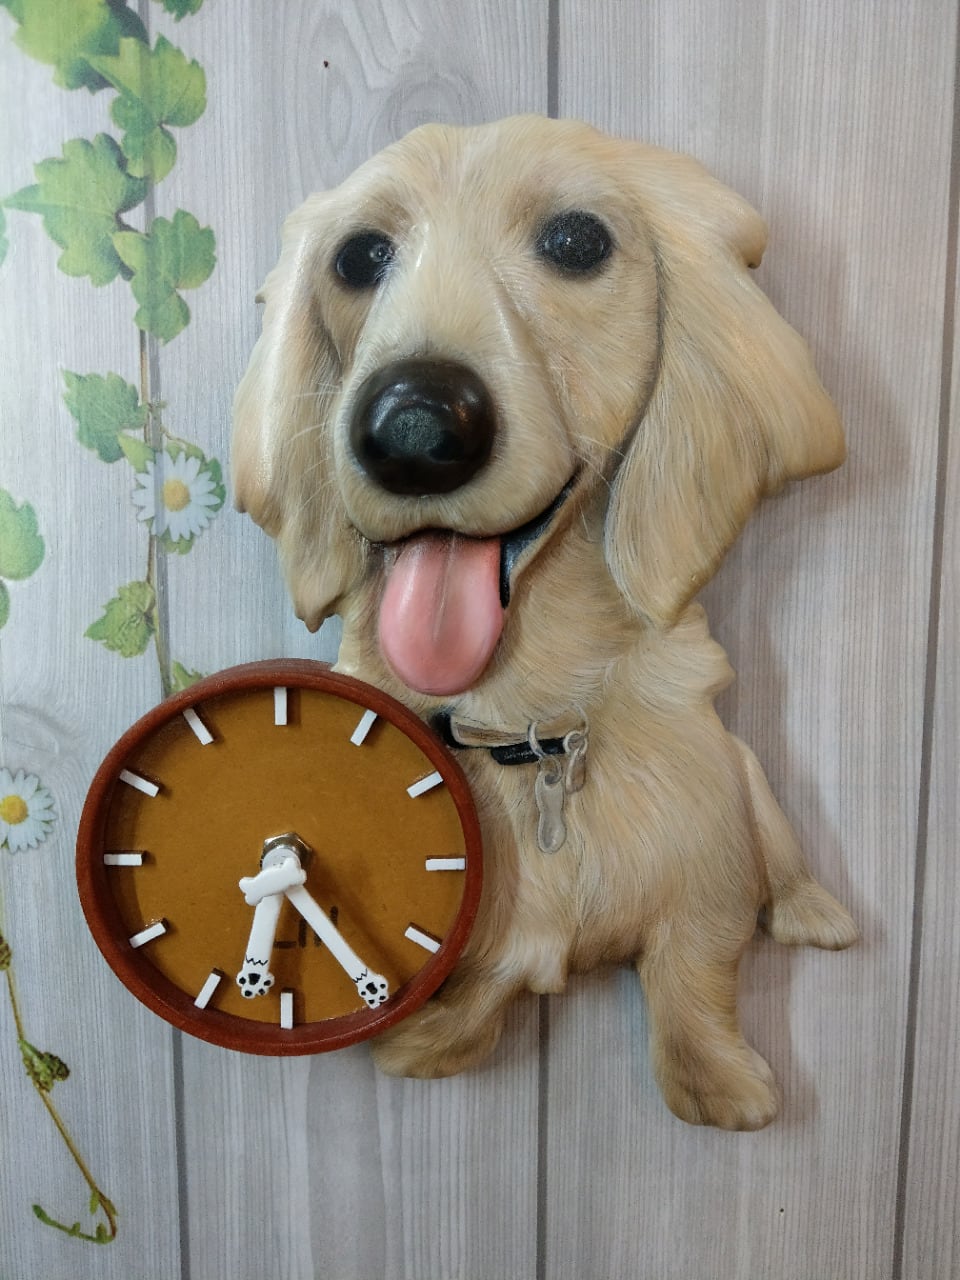 ワンちゃん3d リアル 3d ペット 似顔絵 壁掛時計 愛犬 時計 オーダー 犬グッズ 木製置物 立体 ワンちゃん時計